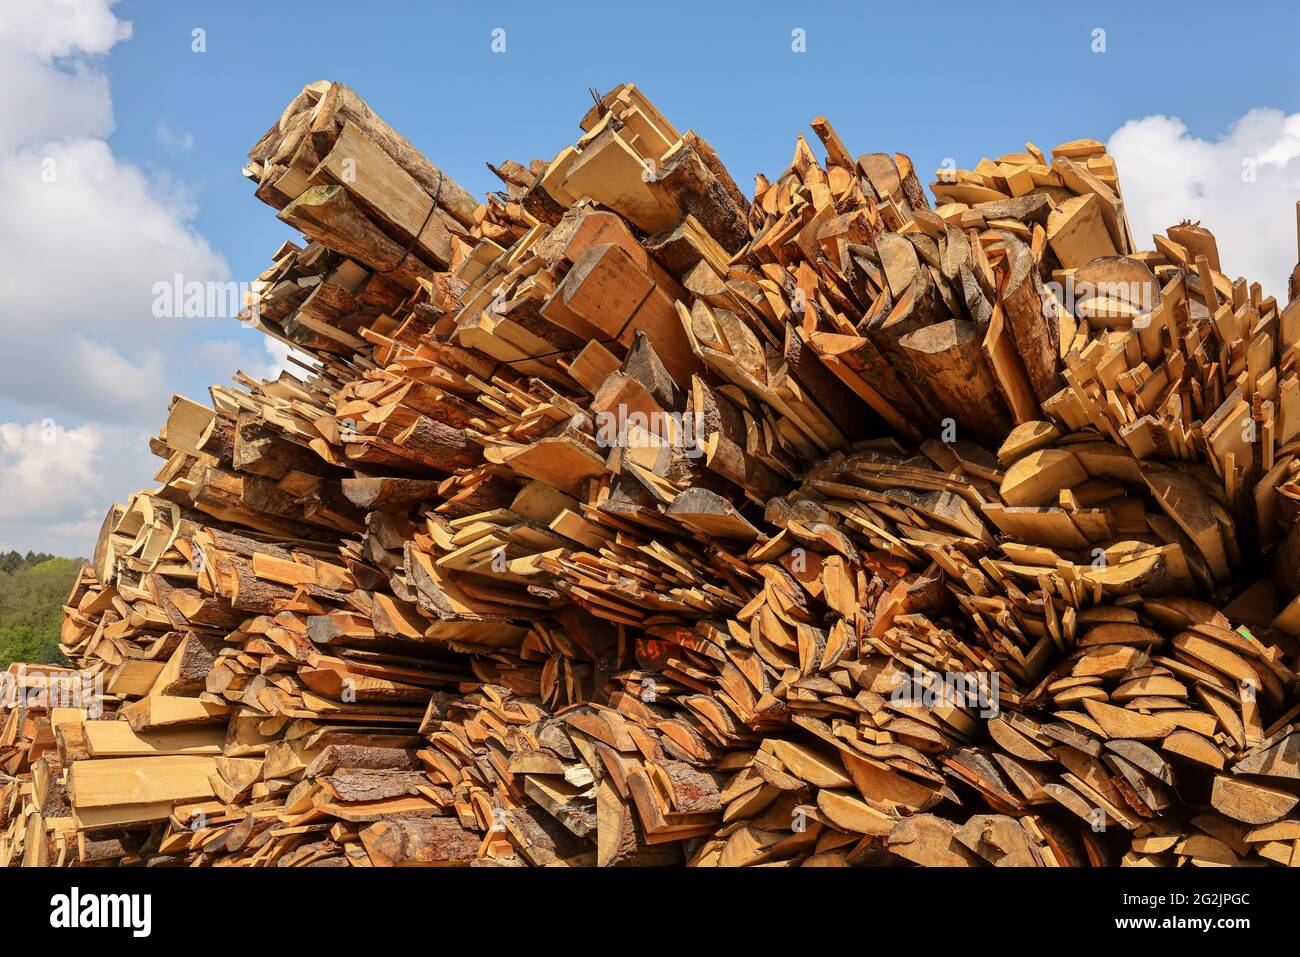 Solingen, Renania del Norte-Westfalia, Alemania - La madera residual en el almacén de madera de un aserradero se procesa en astillas de madera y se utiliza como combustible en la central térmica, la madera es escasa y cara, carpinteros y fábricas de madera están luchando con el rápido aumento de los precios de la madera cruda en tiempos de la crisis de la corona, Grandes cantidades de madera de tronco van a la exportación a China y Estados Unidos. Foto de stock